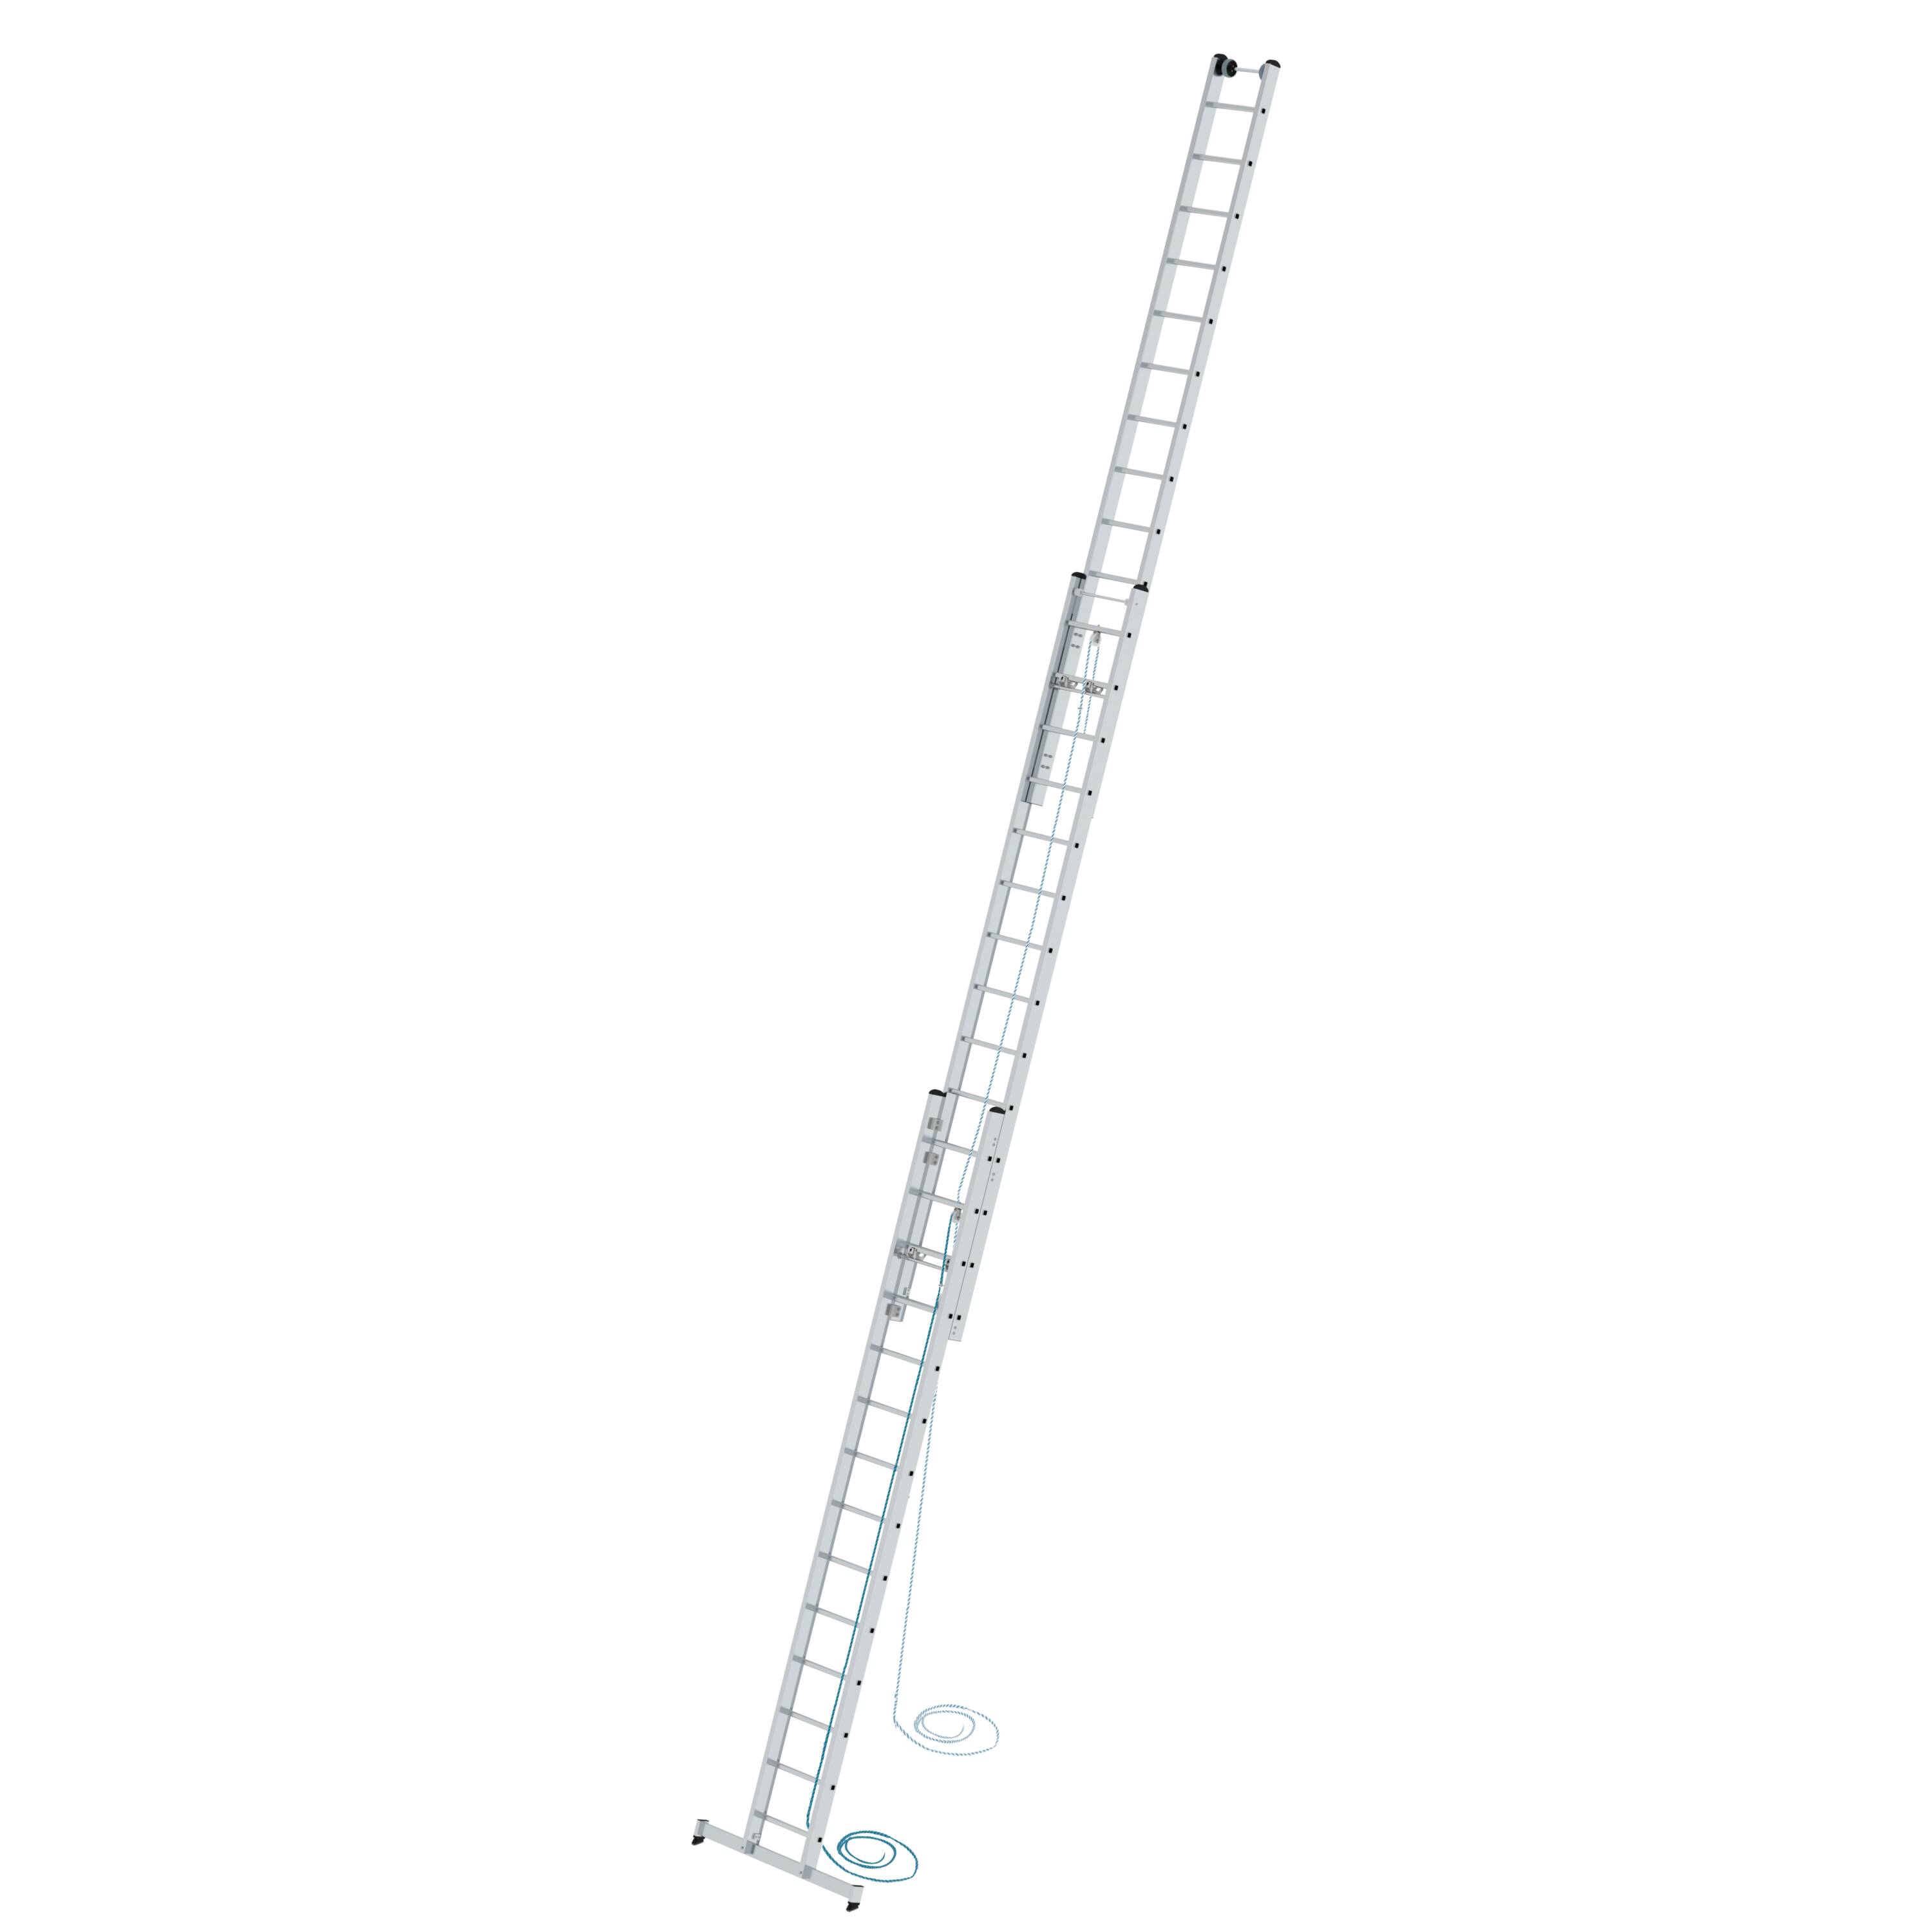 MUNK Sprossen-Seilzugleiter 3-teilig mit nivello®-Traverse  